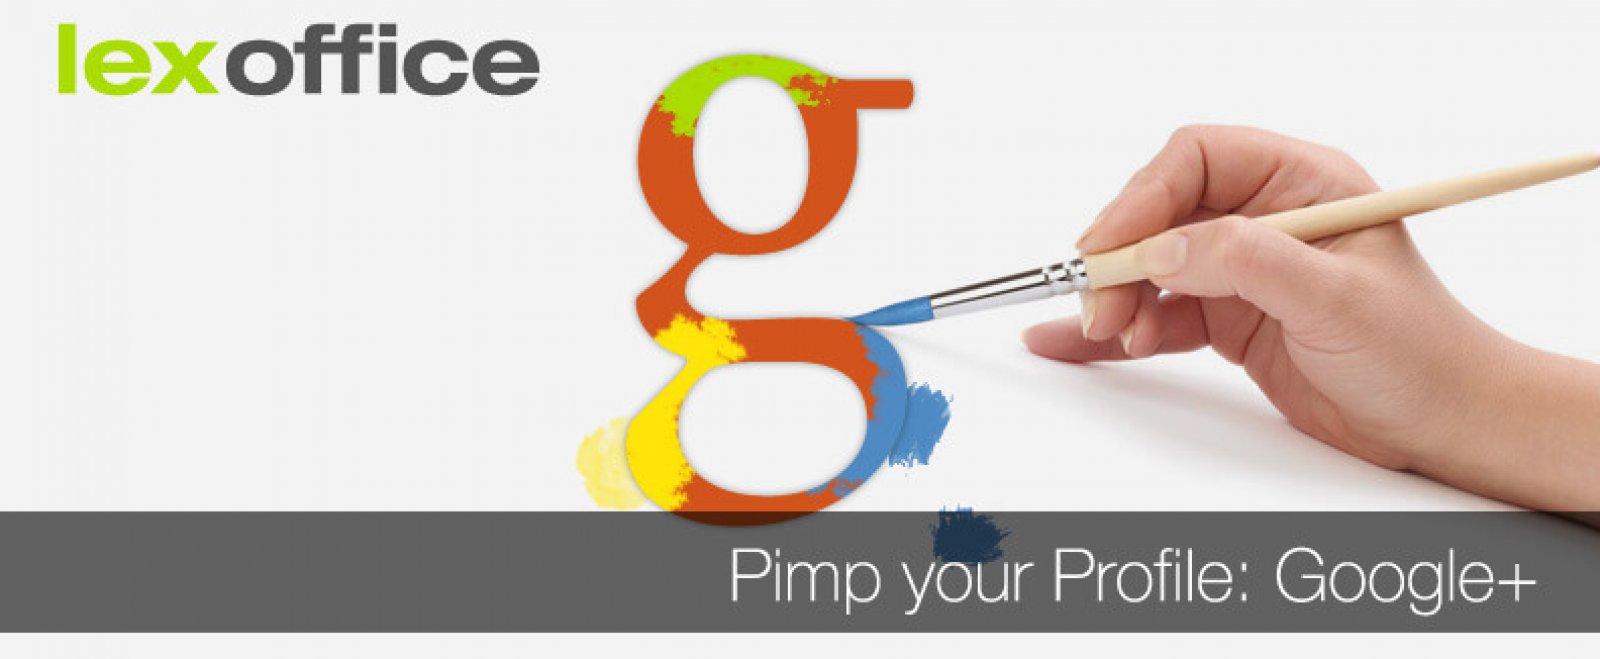 Online-Marketing: Pimp your Profile - Google+